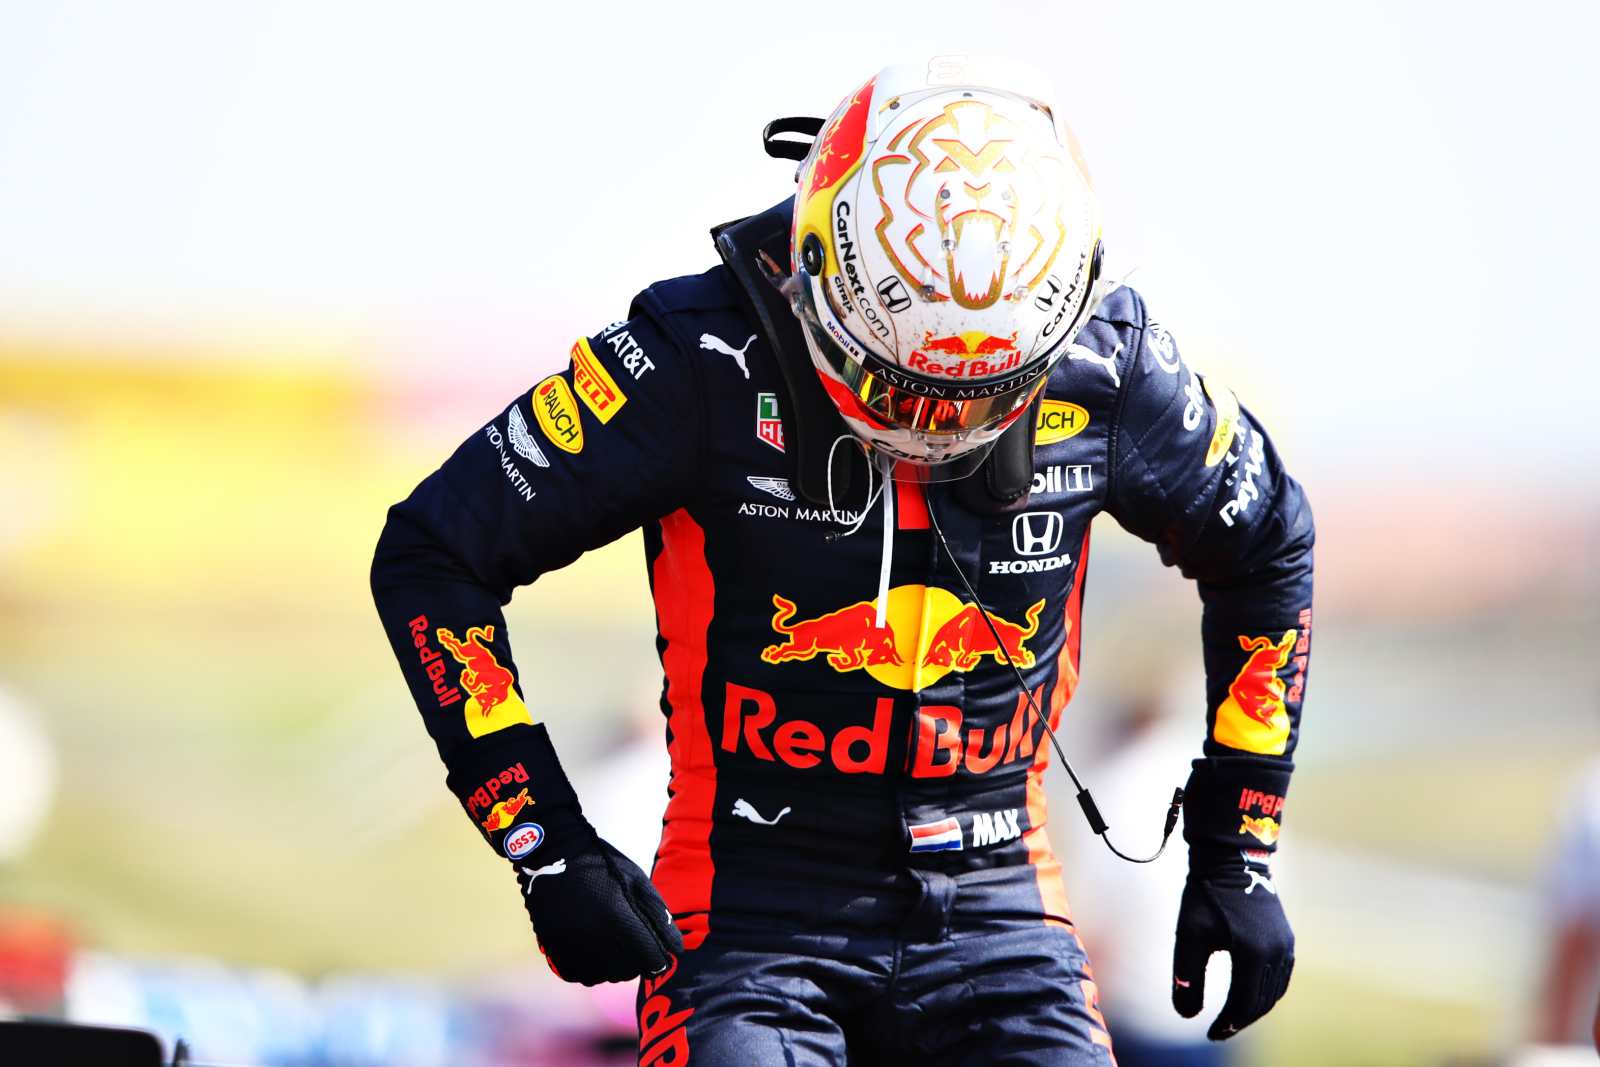 Última vitória da Red Bull em Silverstone aconteceu em 2012 